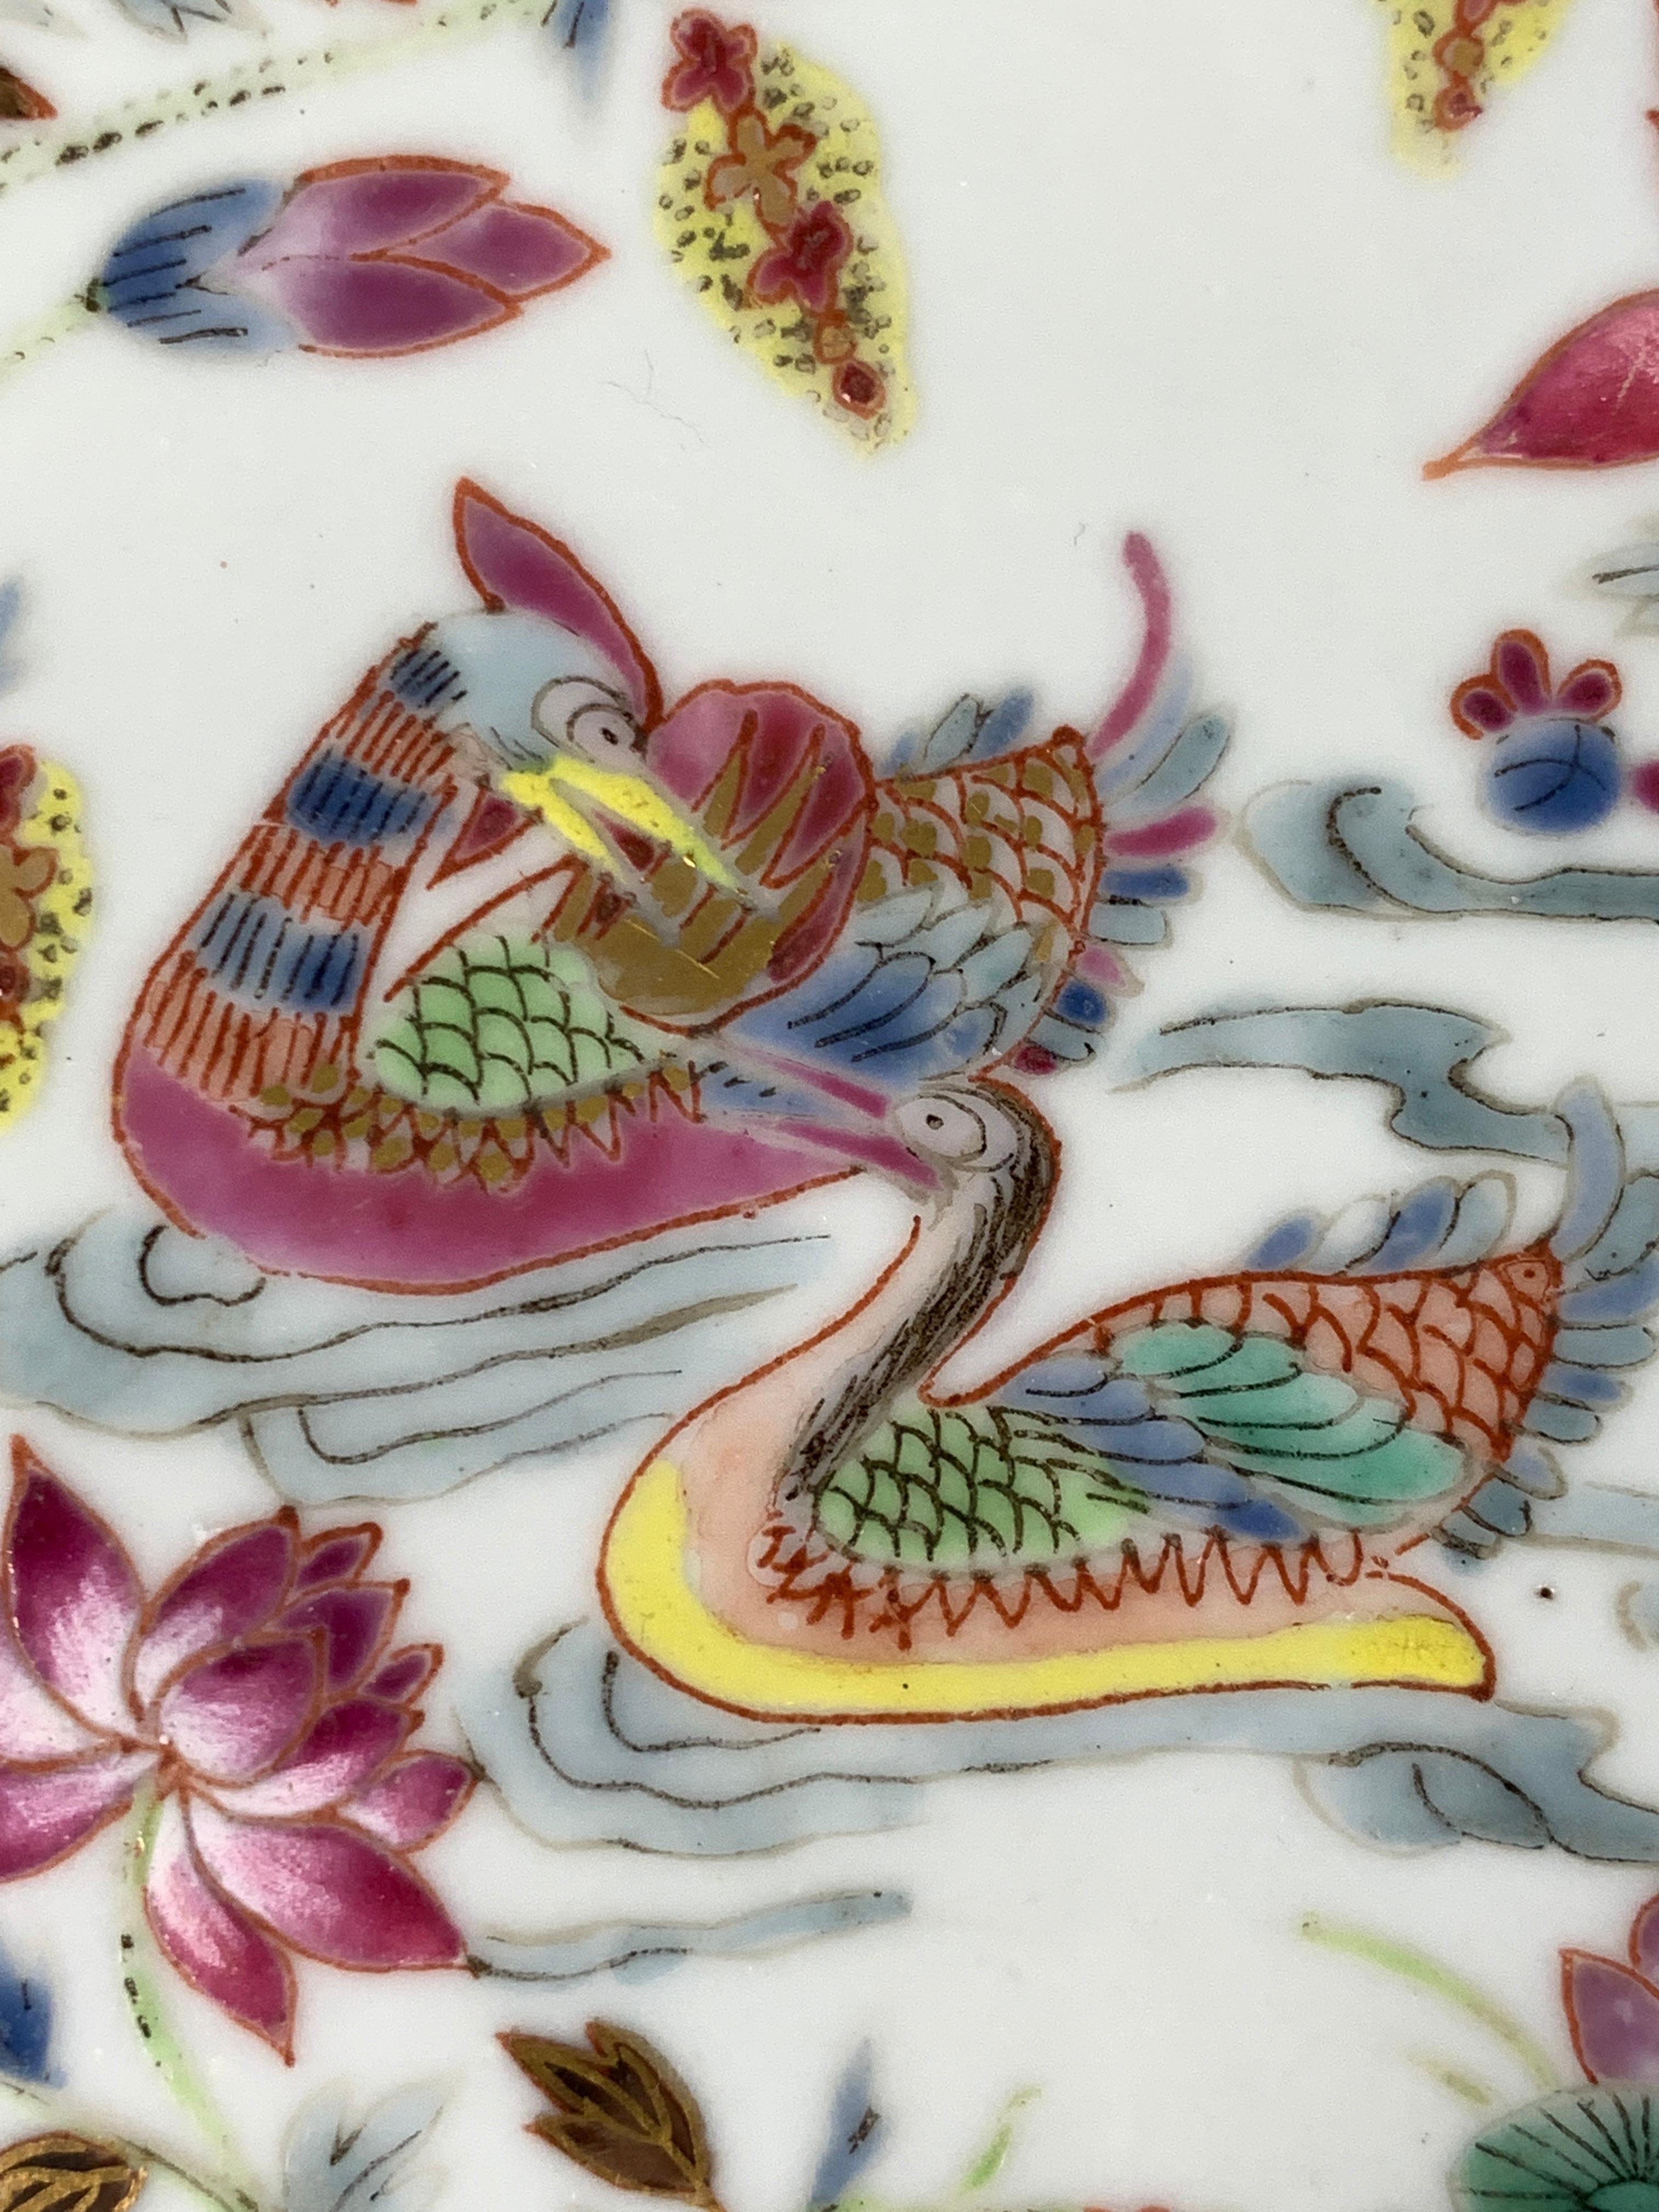 Dieser Famille-Rose-Teller aus dem frühen 19. Jahrhundert, um 1820, ist mit acht daoistischen Unsterblichen handbemalt, von denen einige auf fabelhaften Fabelwesen reiten. Die Umrandung ist zusätzlich mit floralen Motiven verziert. 
Ein rosafarbenes